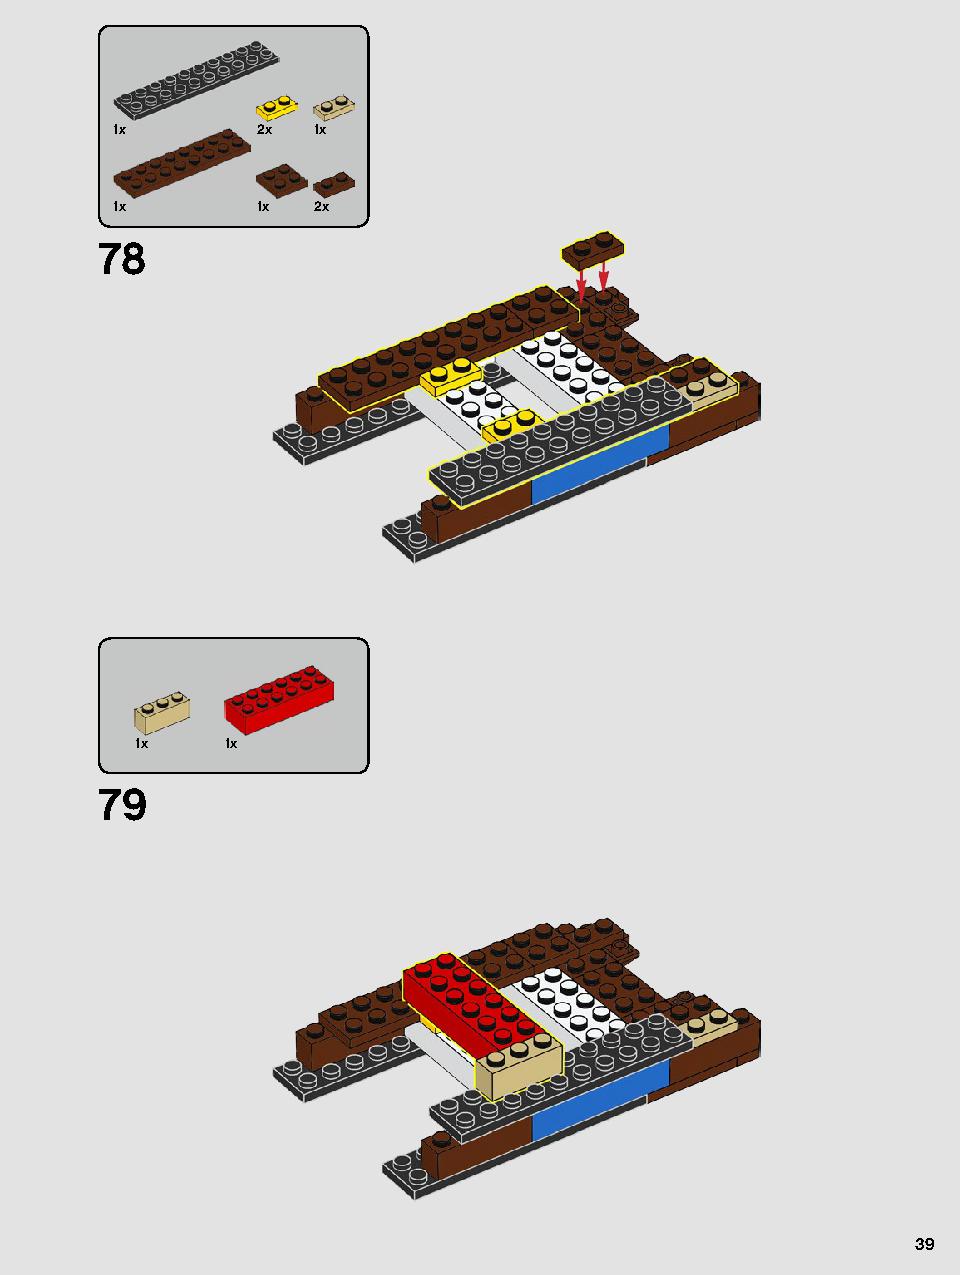 ヨーダ™ 75255 レゴの商品情報 レゴの説明書・組立方法 39 page